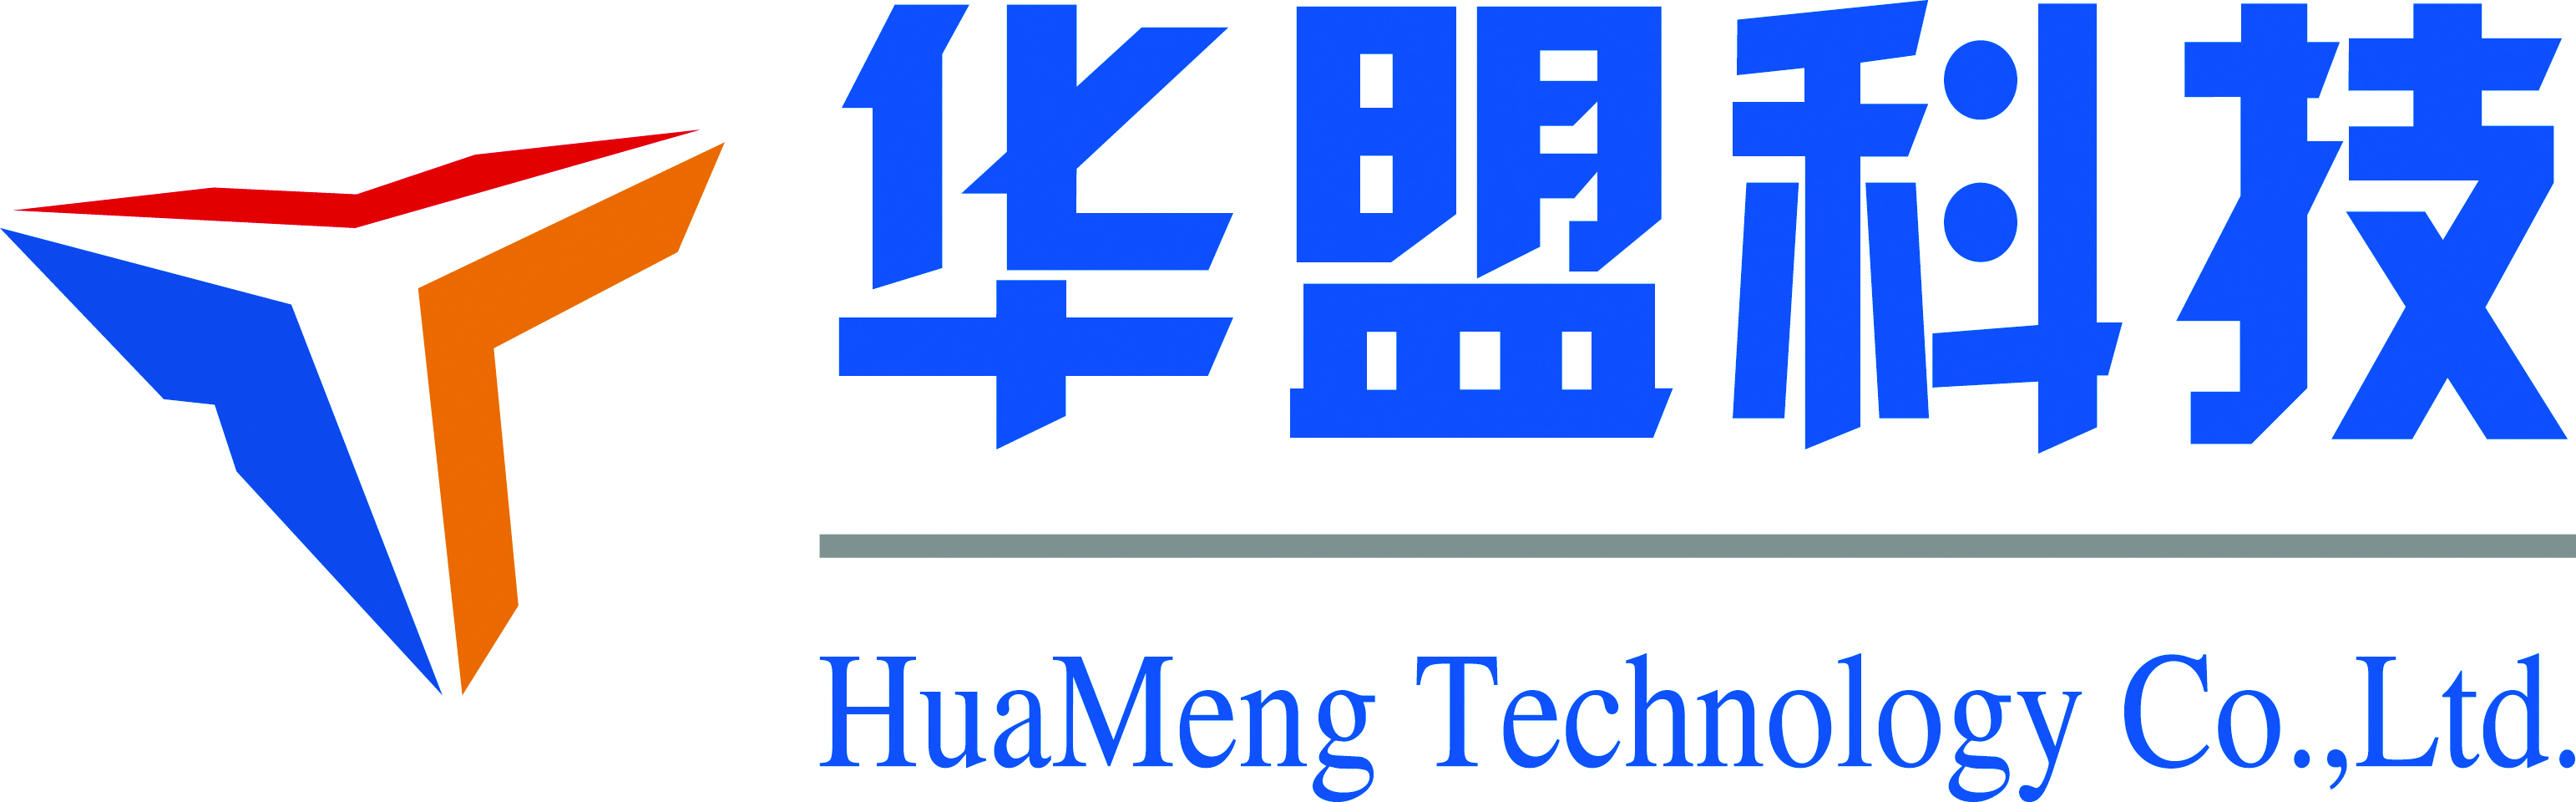 Guangzhou Huameng Technology Co., Ltd